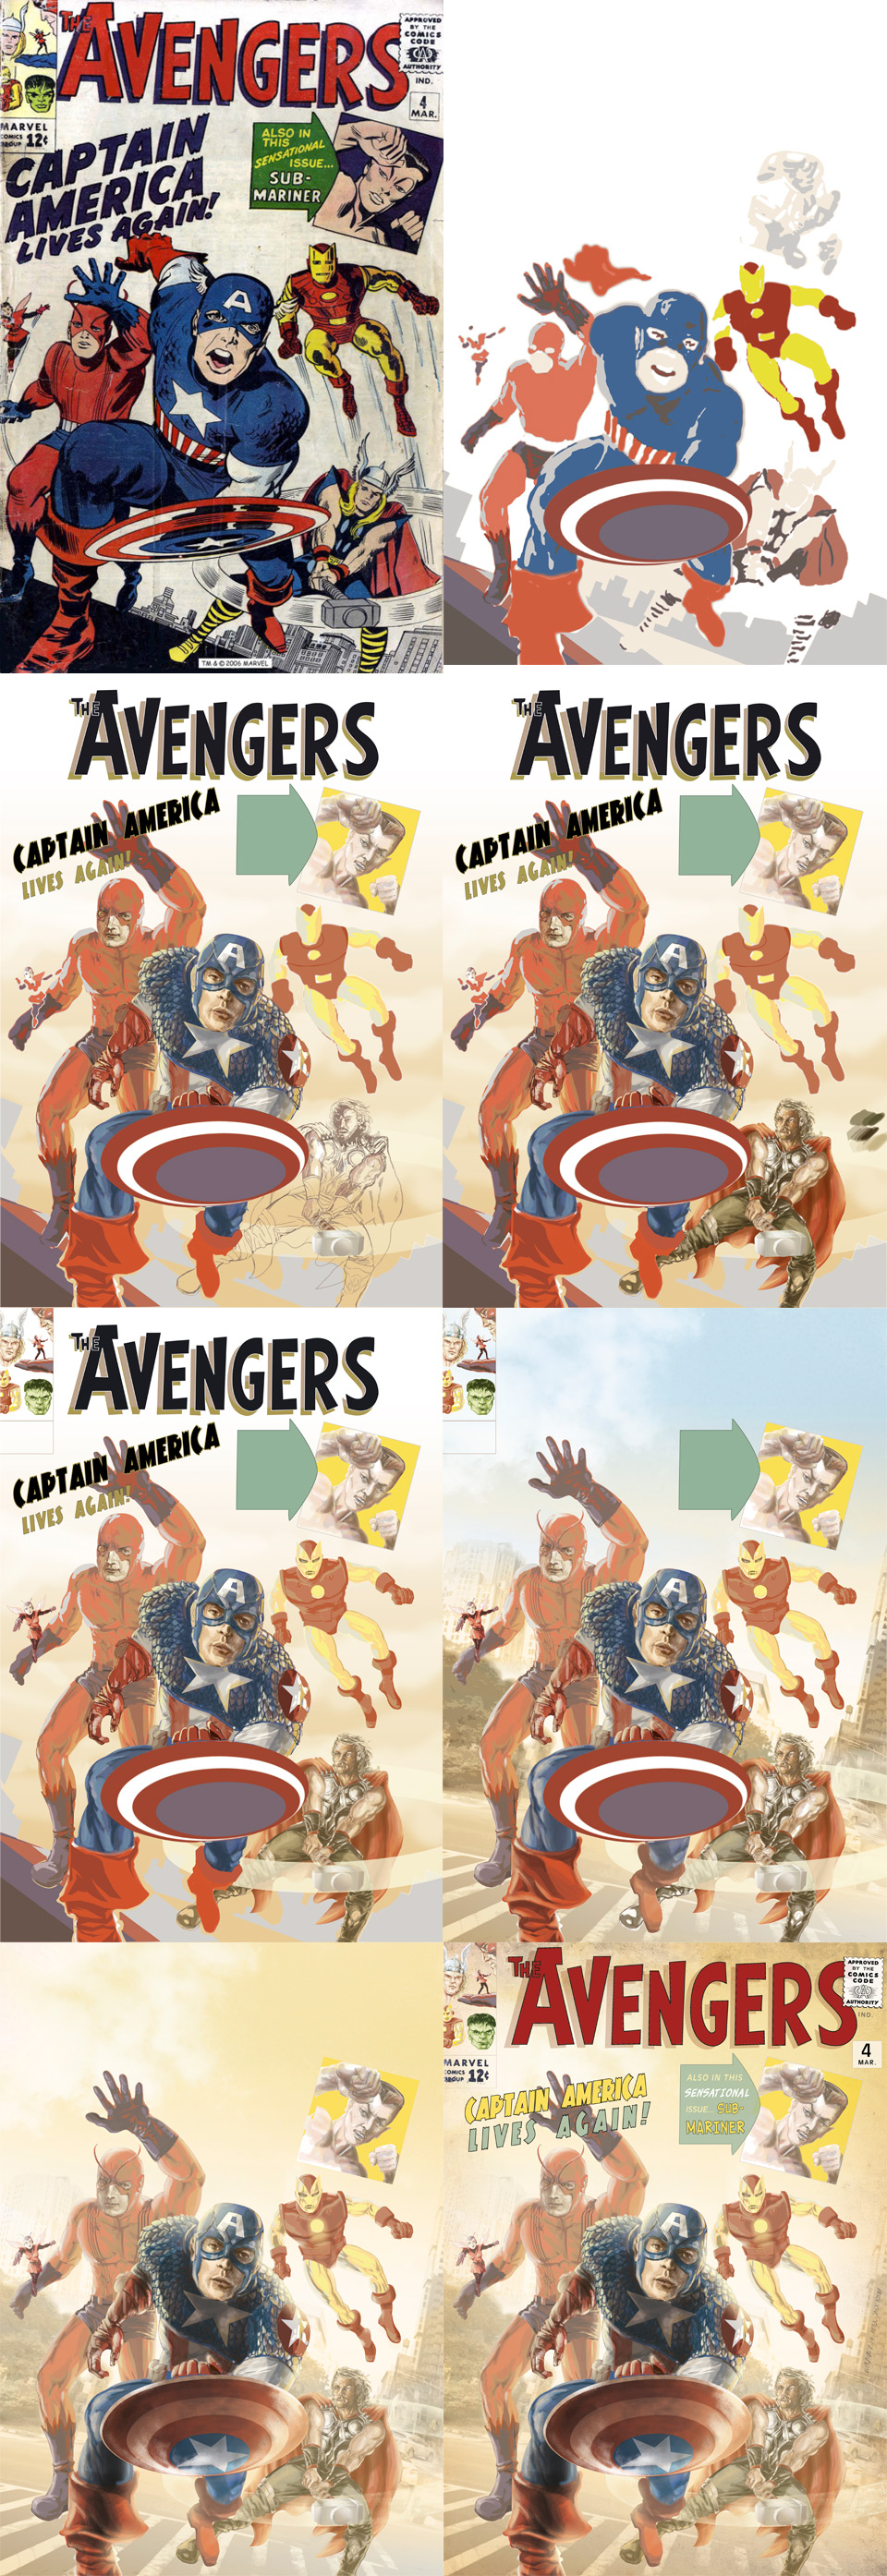 Avengers4-steps